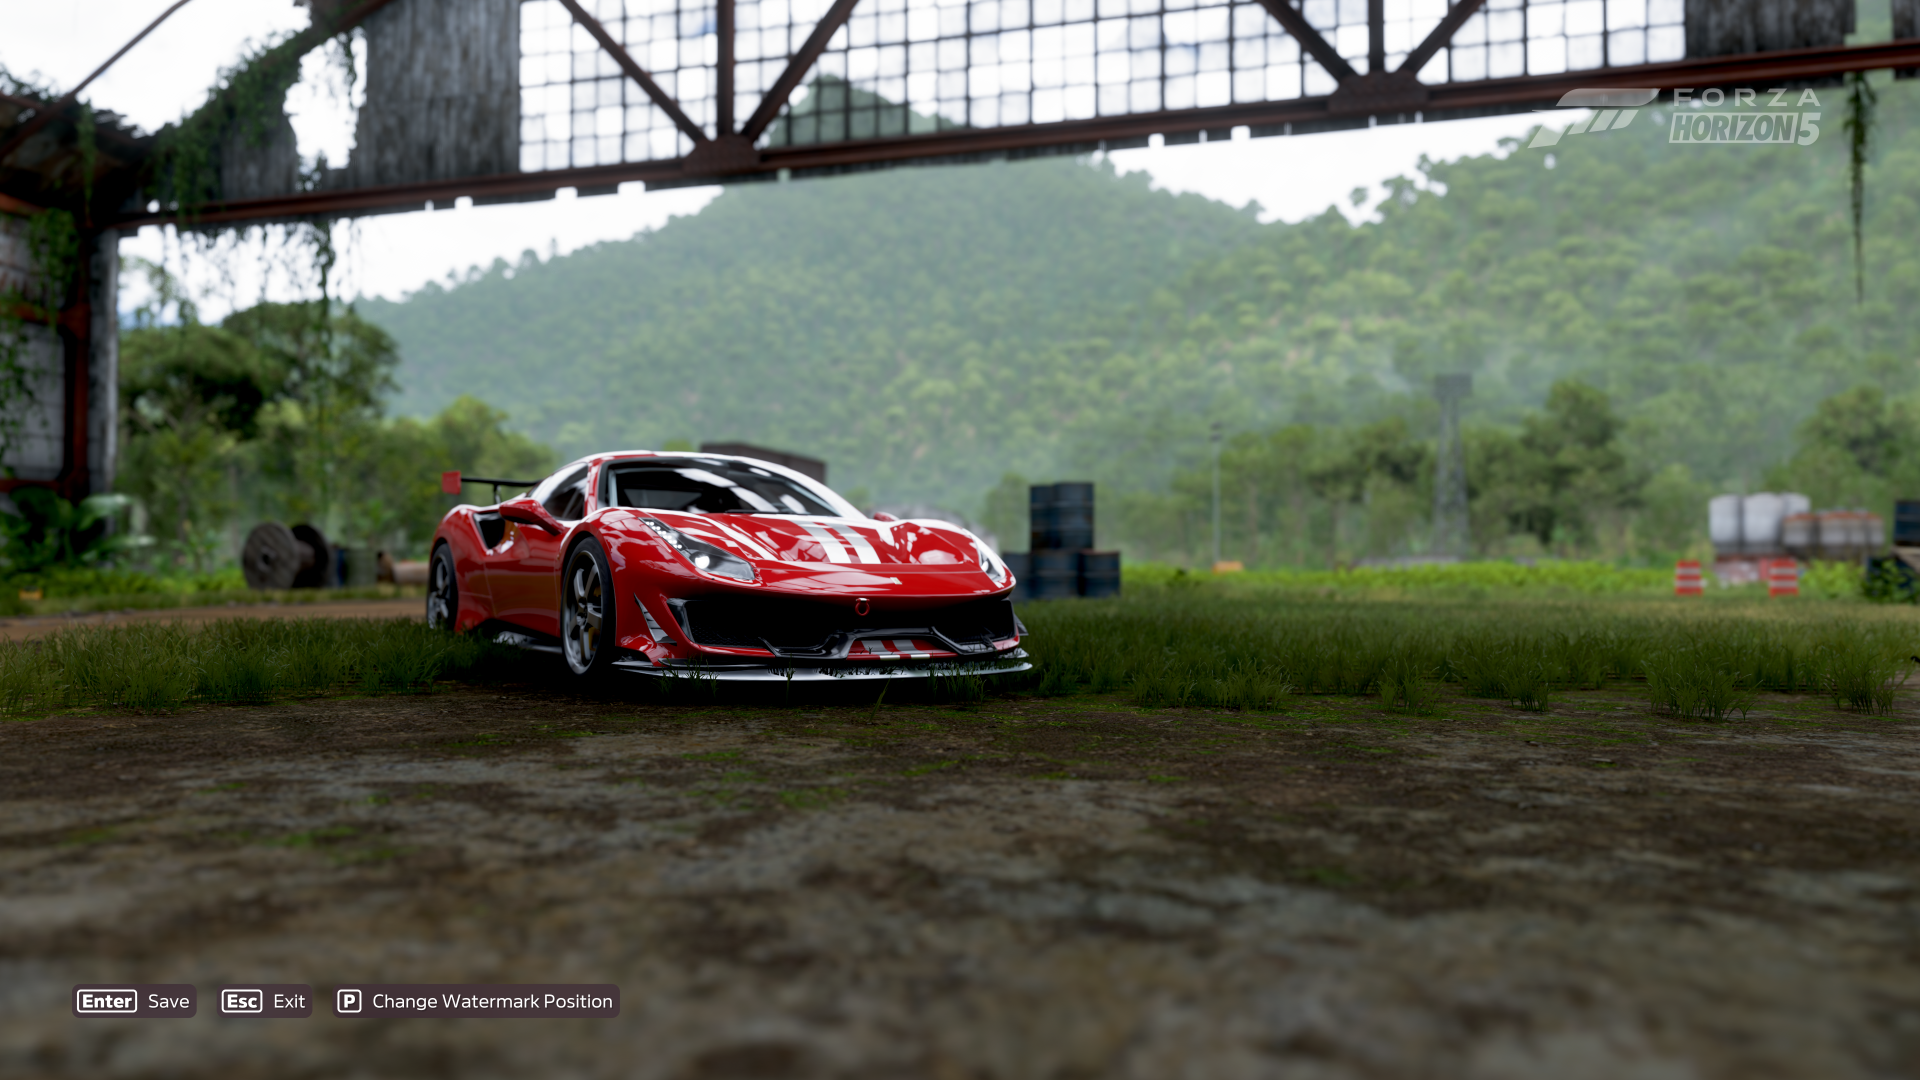 General 1920x1080 Forza Horizon 5 Mexico landscape video games Ferrari Ferrari 488 pista italian cars screen shot car